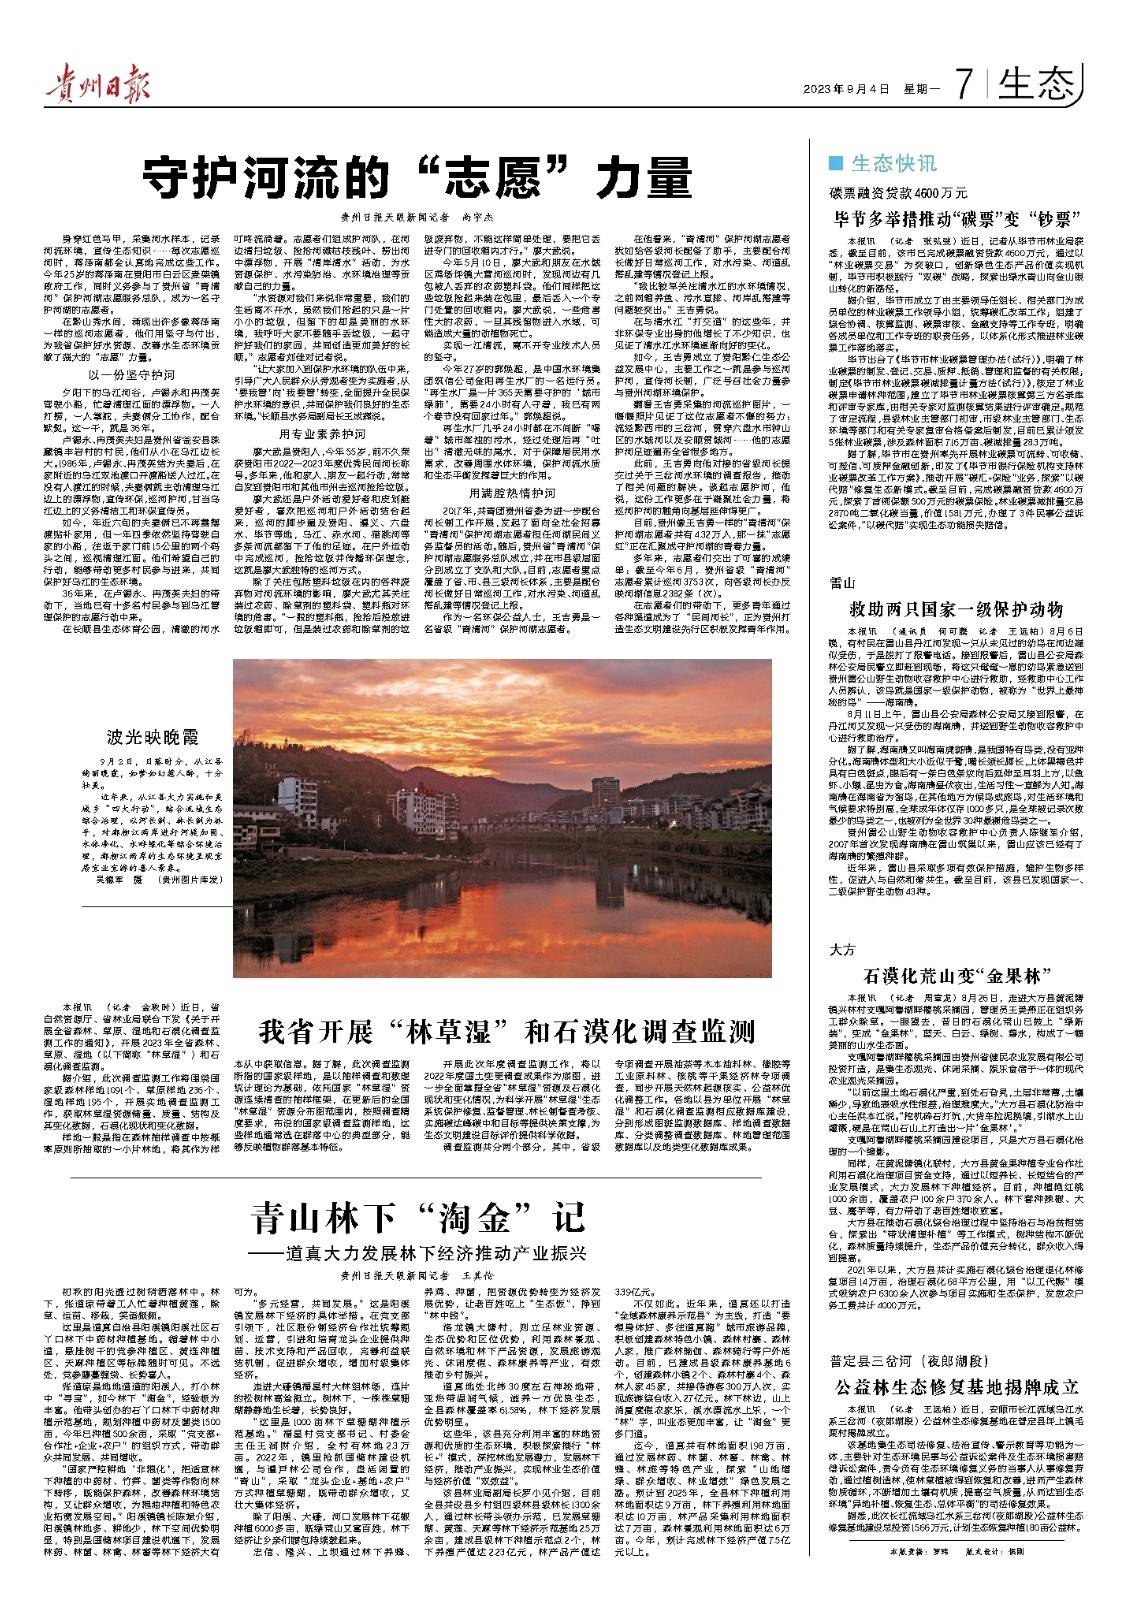 版面速览 | 9月4日贵州日报《生态》新闻版